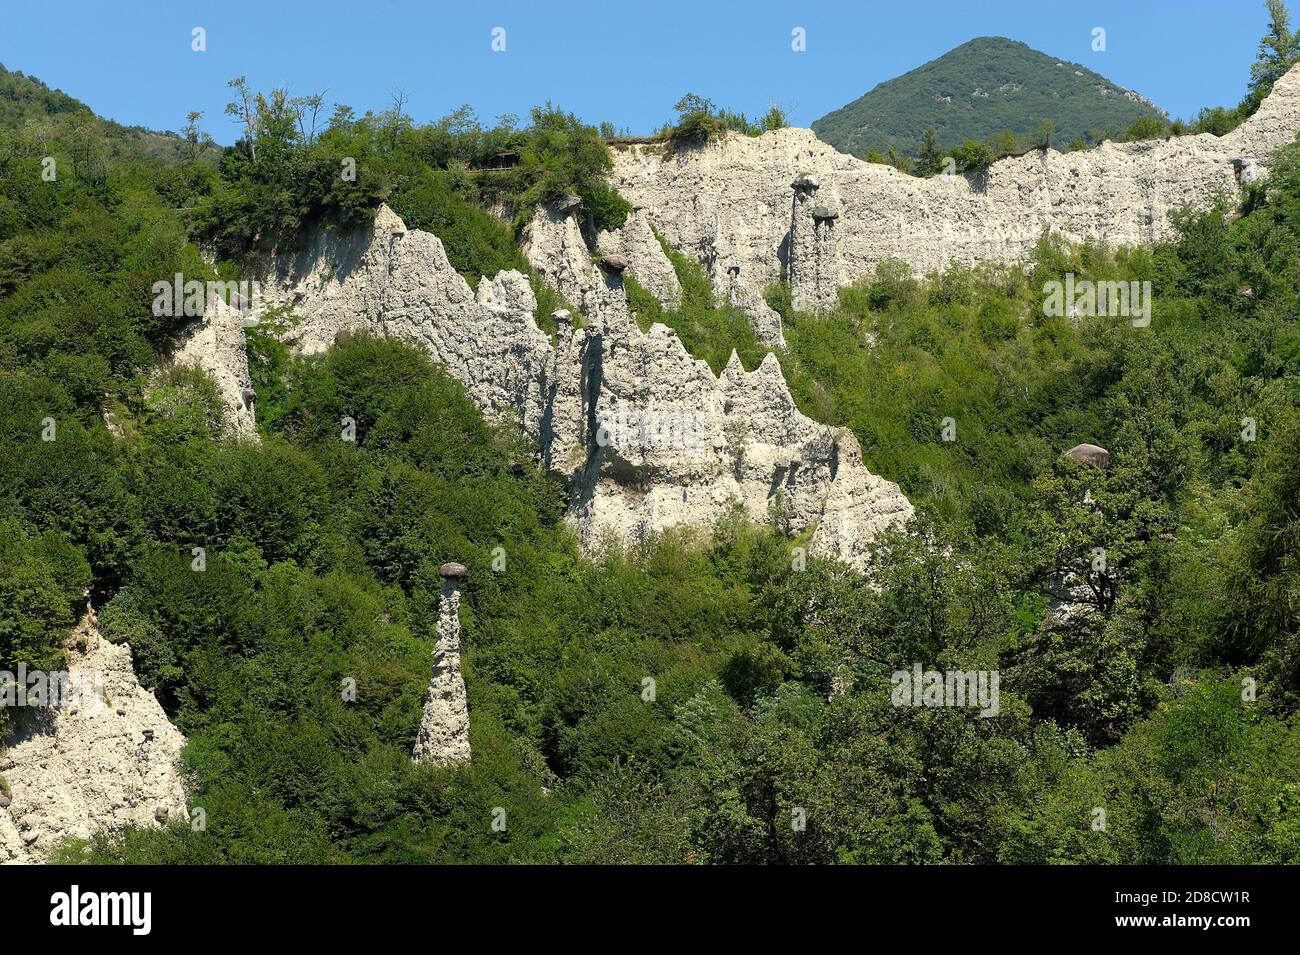 Zona (BS), Italia, NaturalReserve de las pirámides de la zona , las pirámides de tierra coronada por grandes sombreros resistentes rock,originada por la ley erosivo Foto de stock